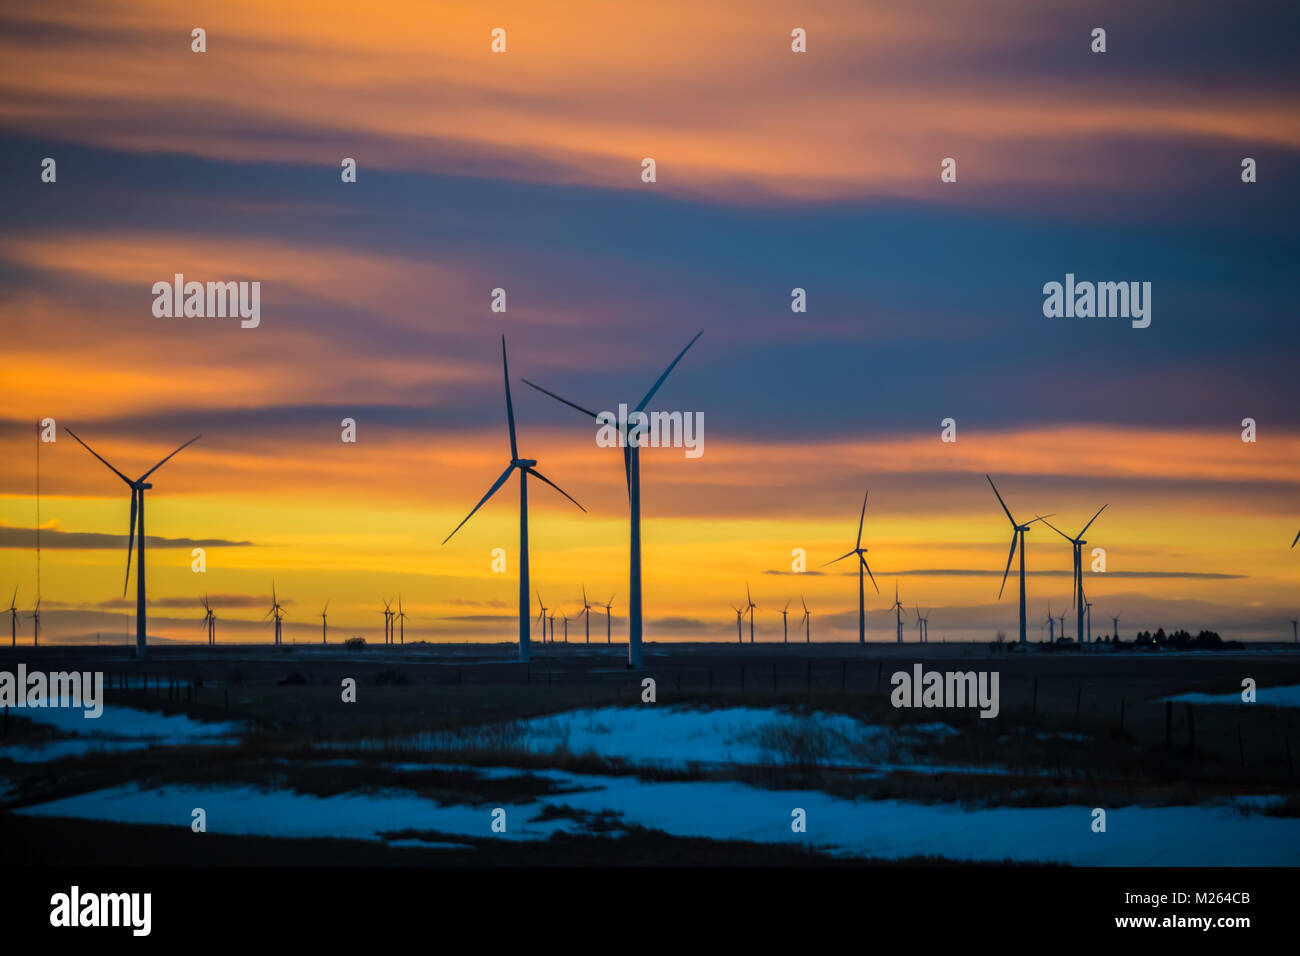 Bel tramonto con sagome di mulini a vento in primo piano; neve sulla terra; Colorado, STATI UNITI D'AMERICA Foto Stock